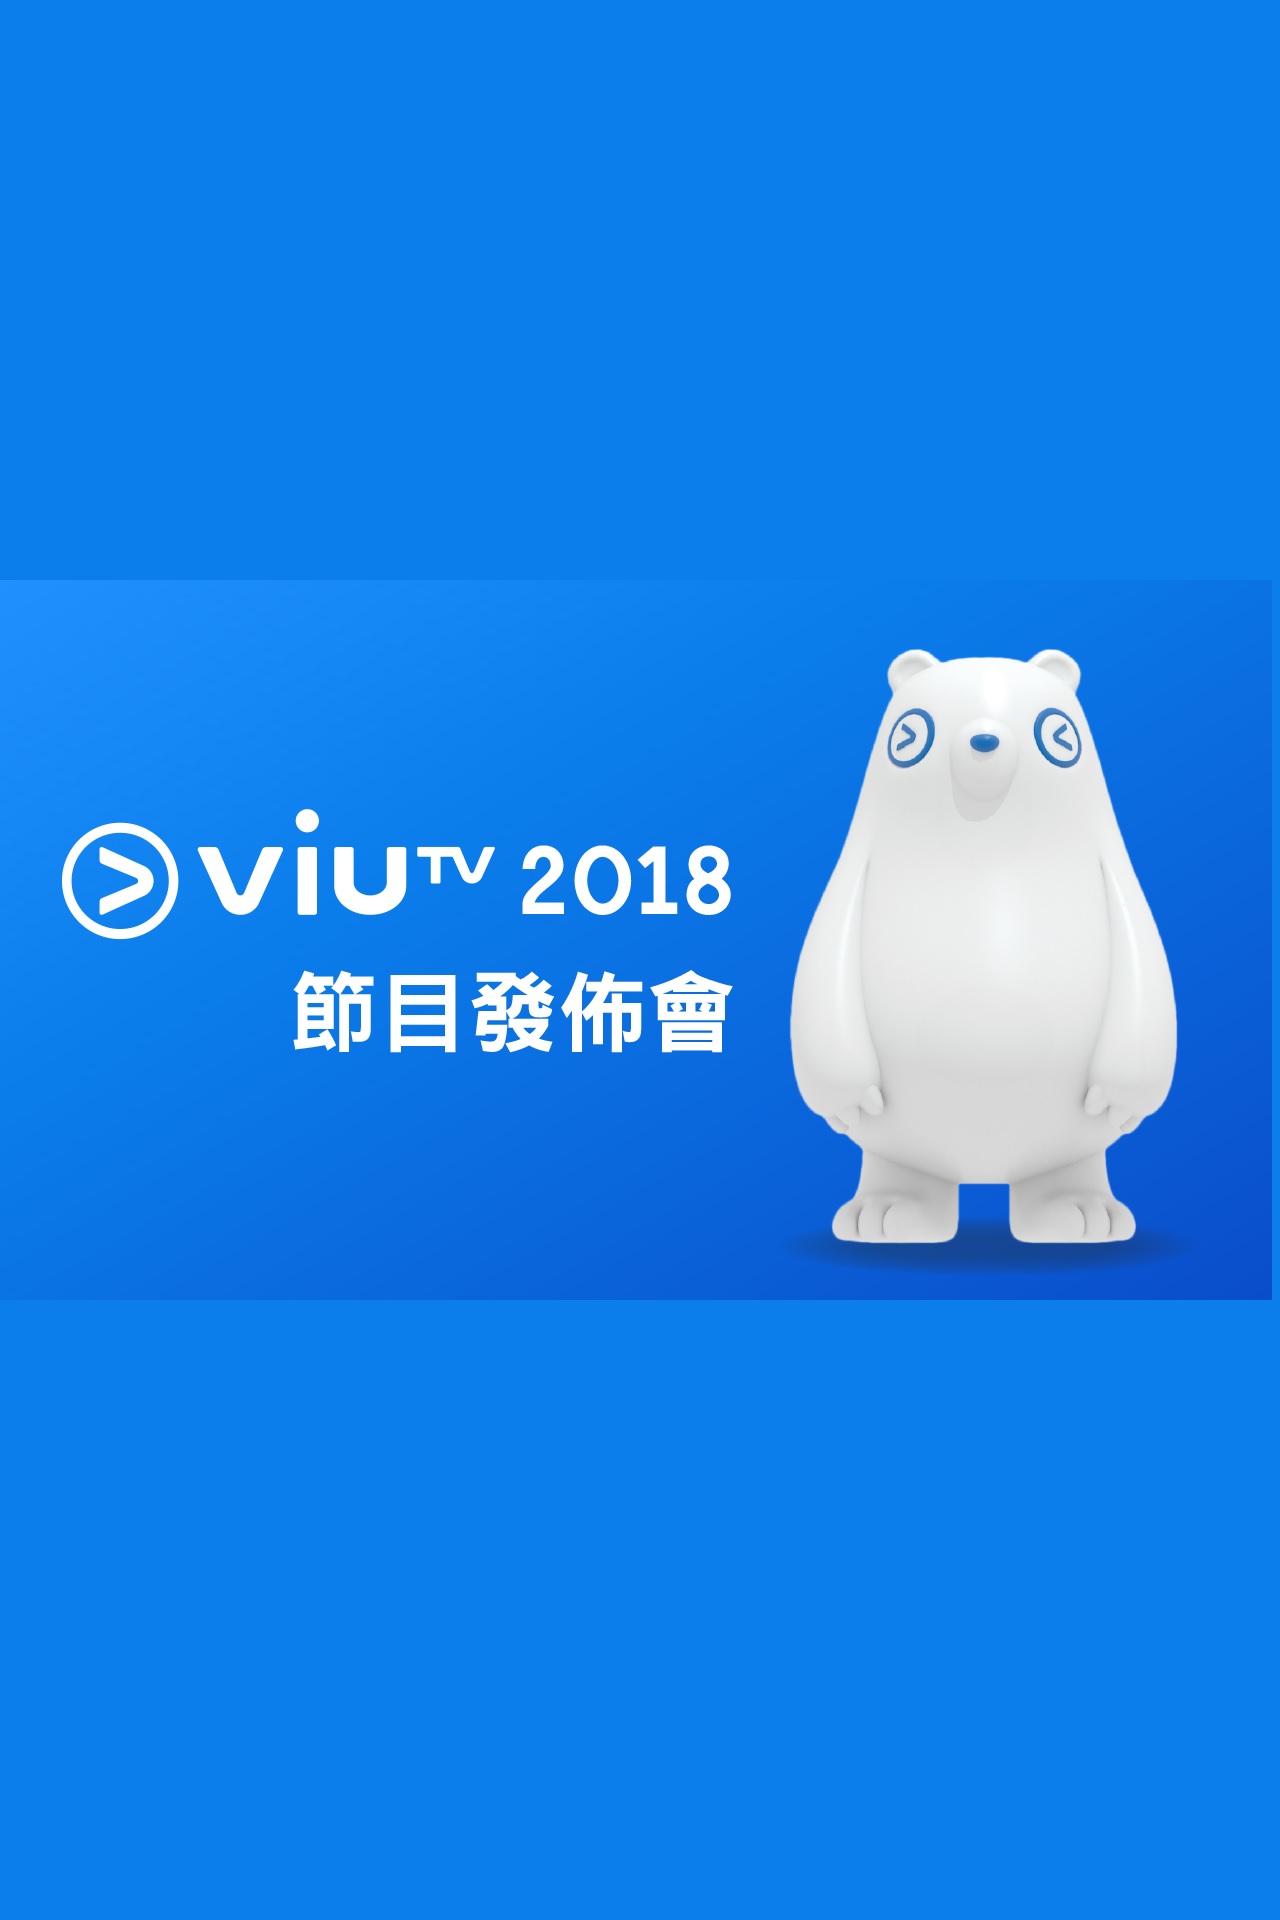 ViuTV 2018